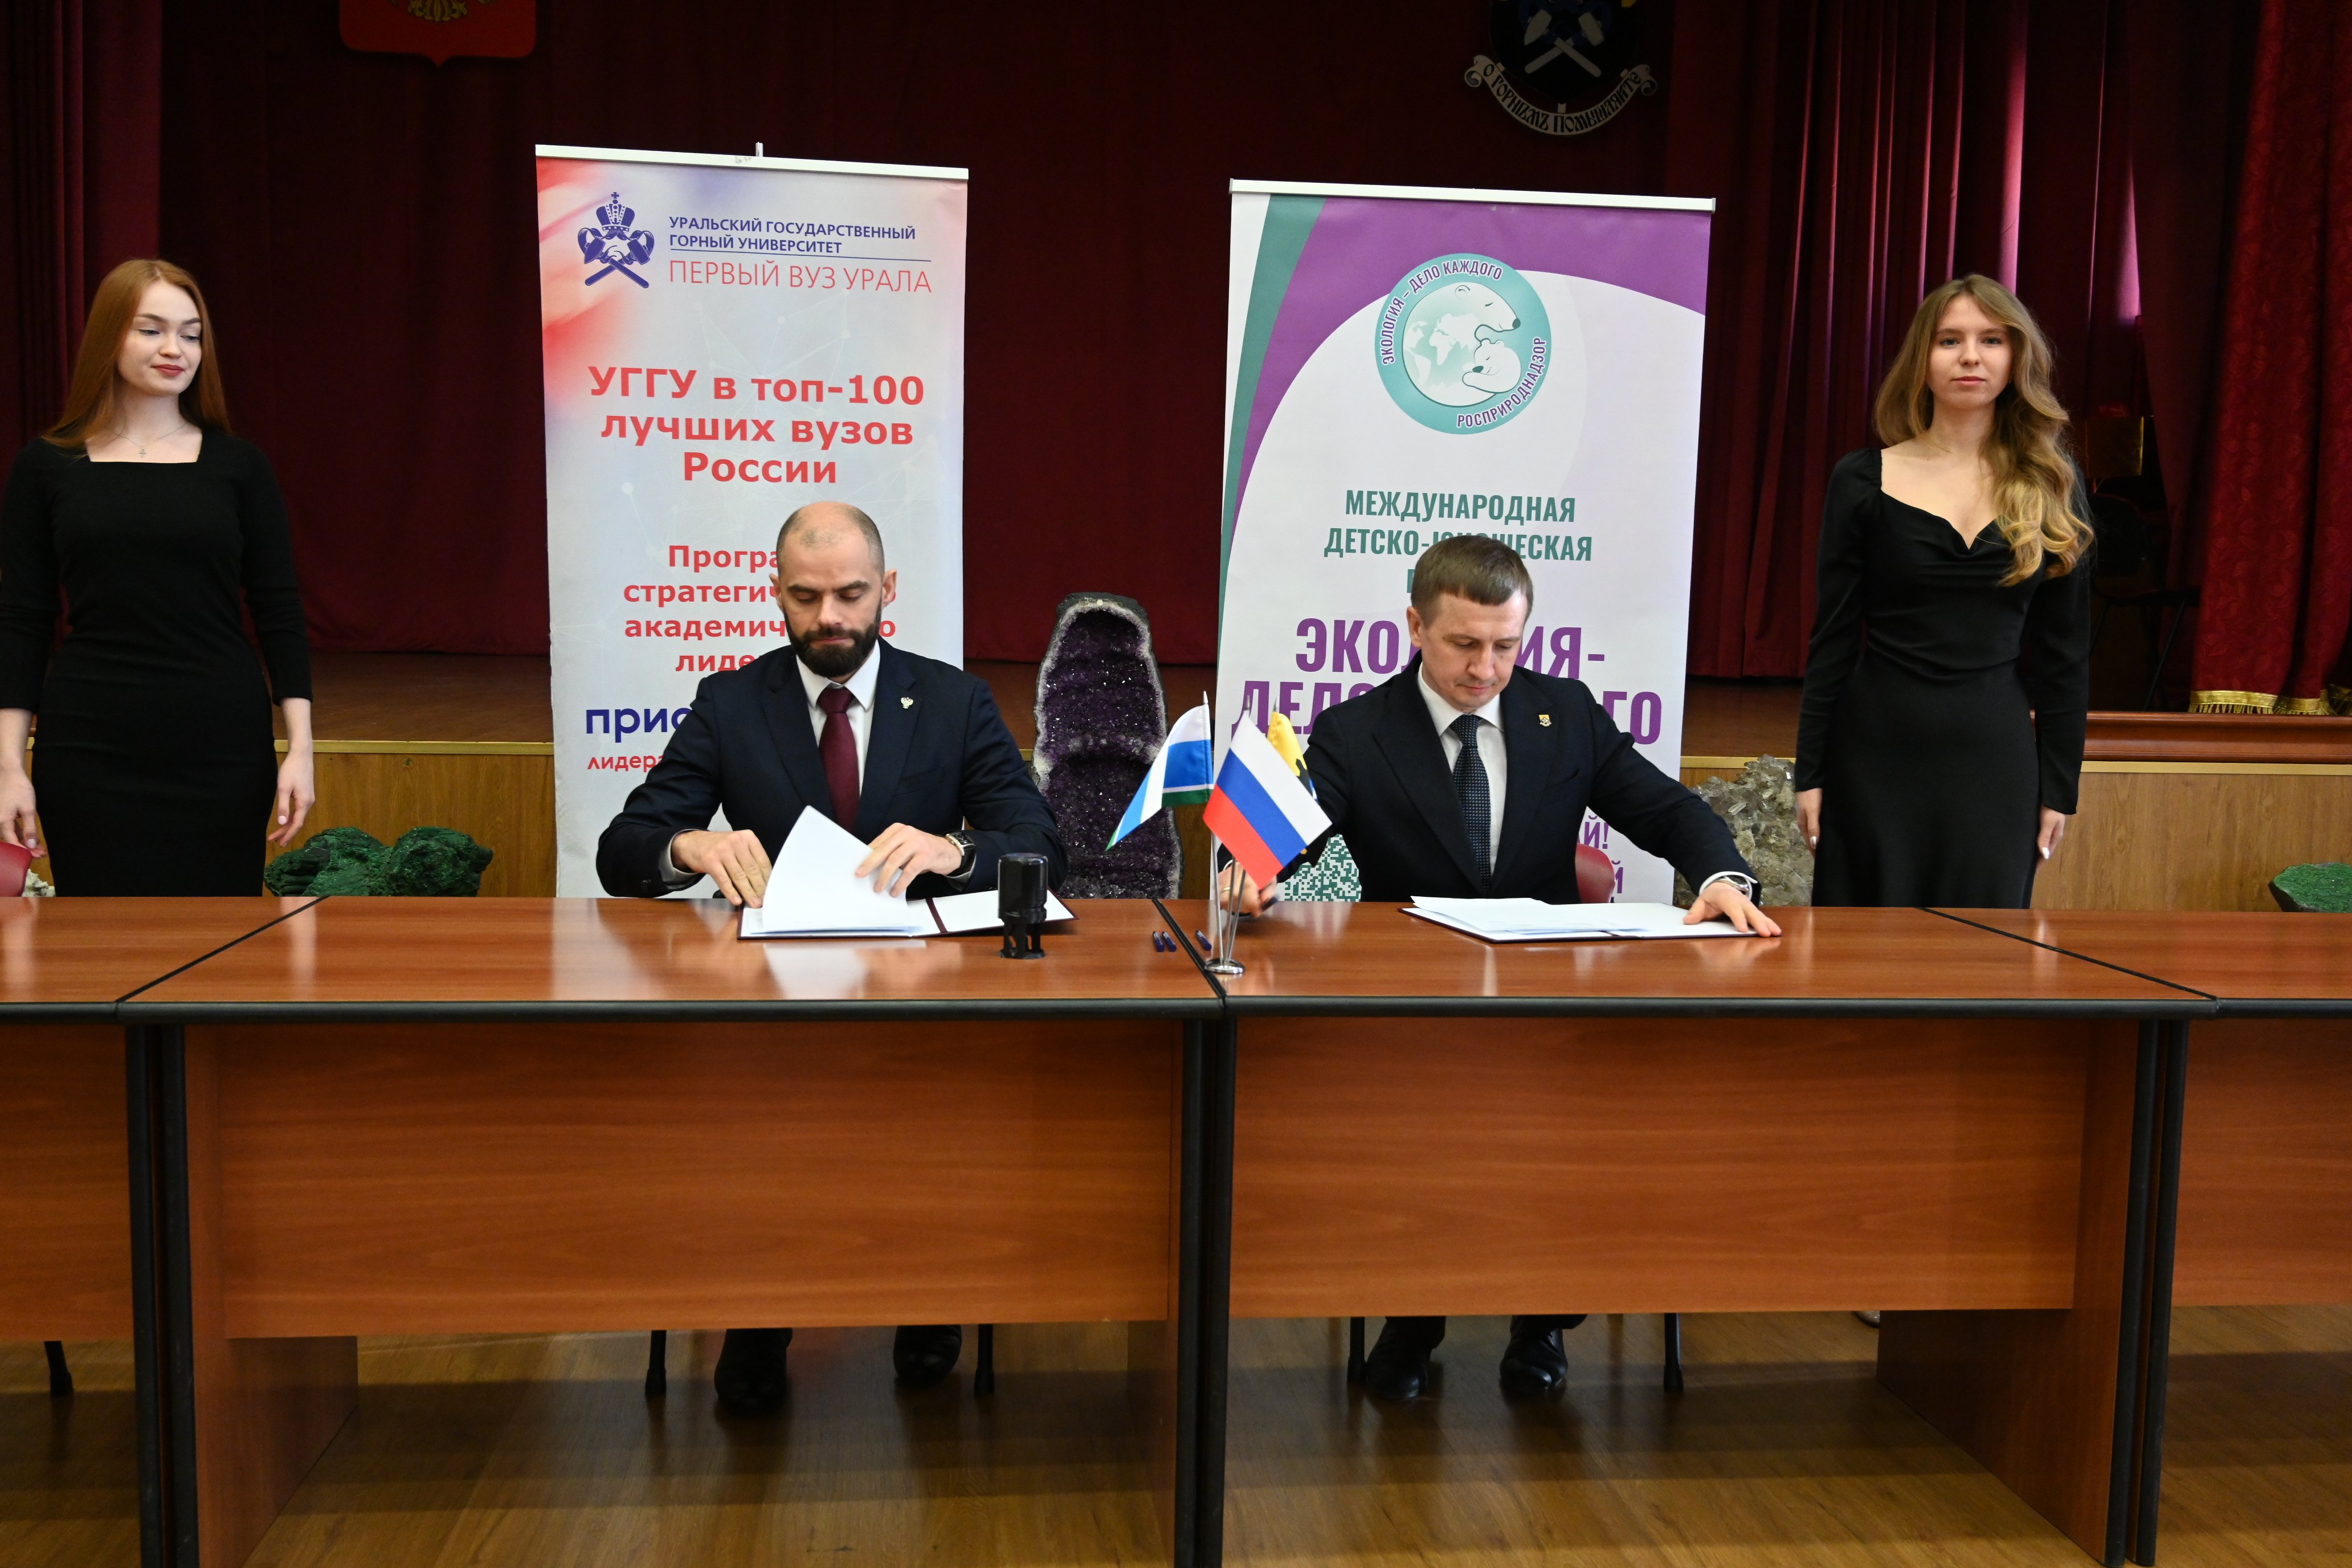 Уральский горный университет и Росприроднадзор подписали соглашение о партнерстве